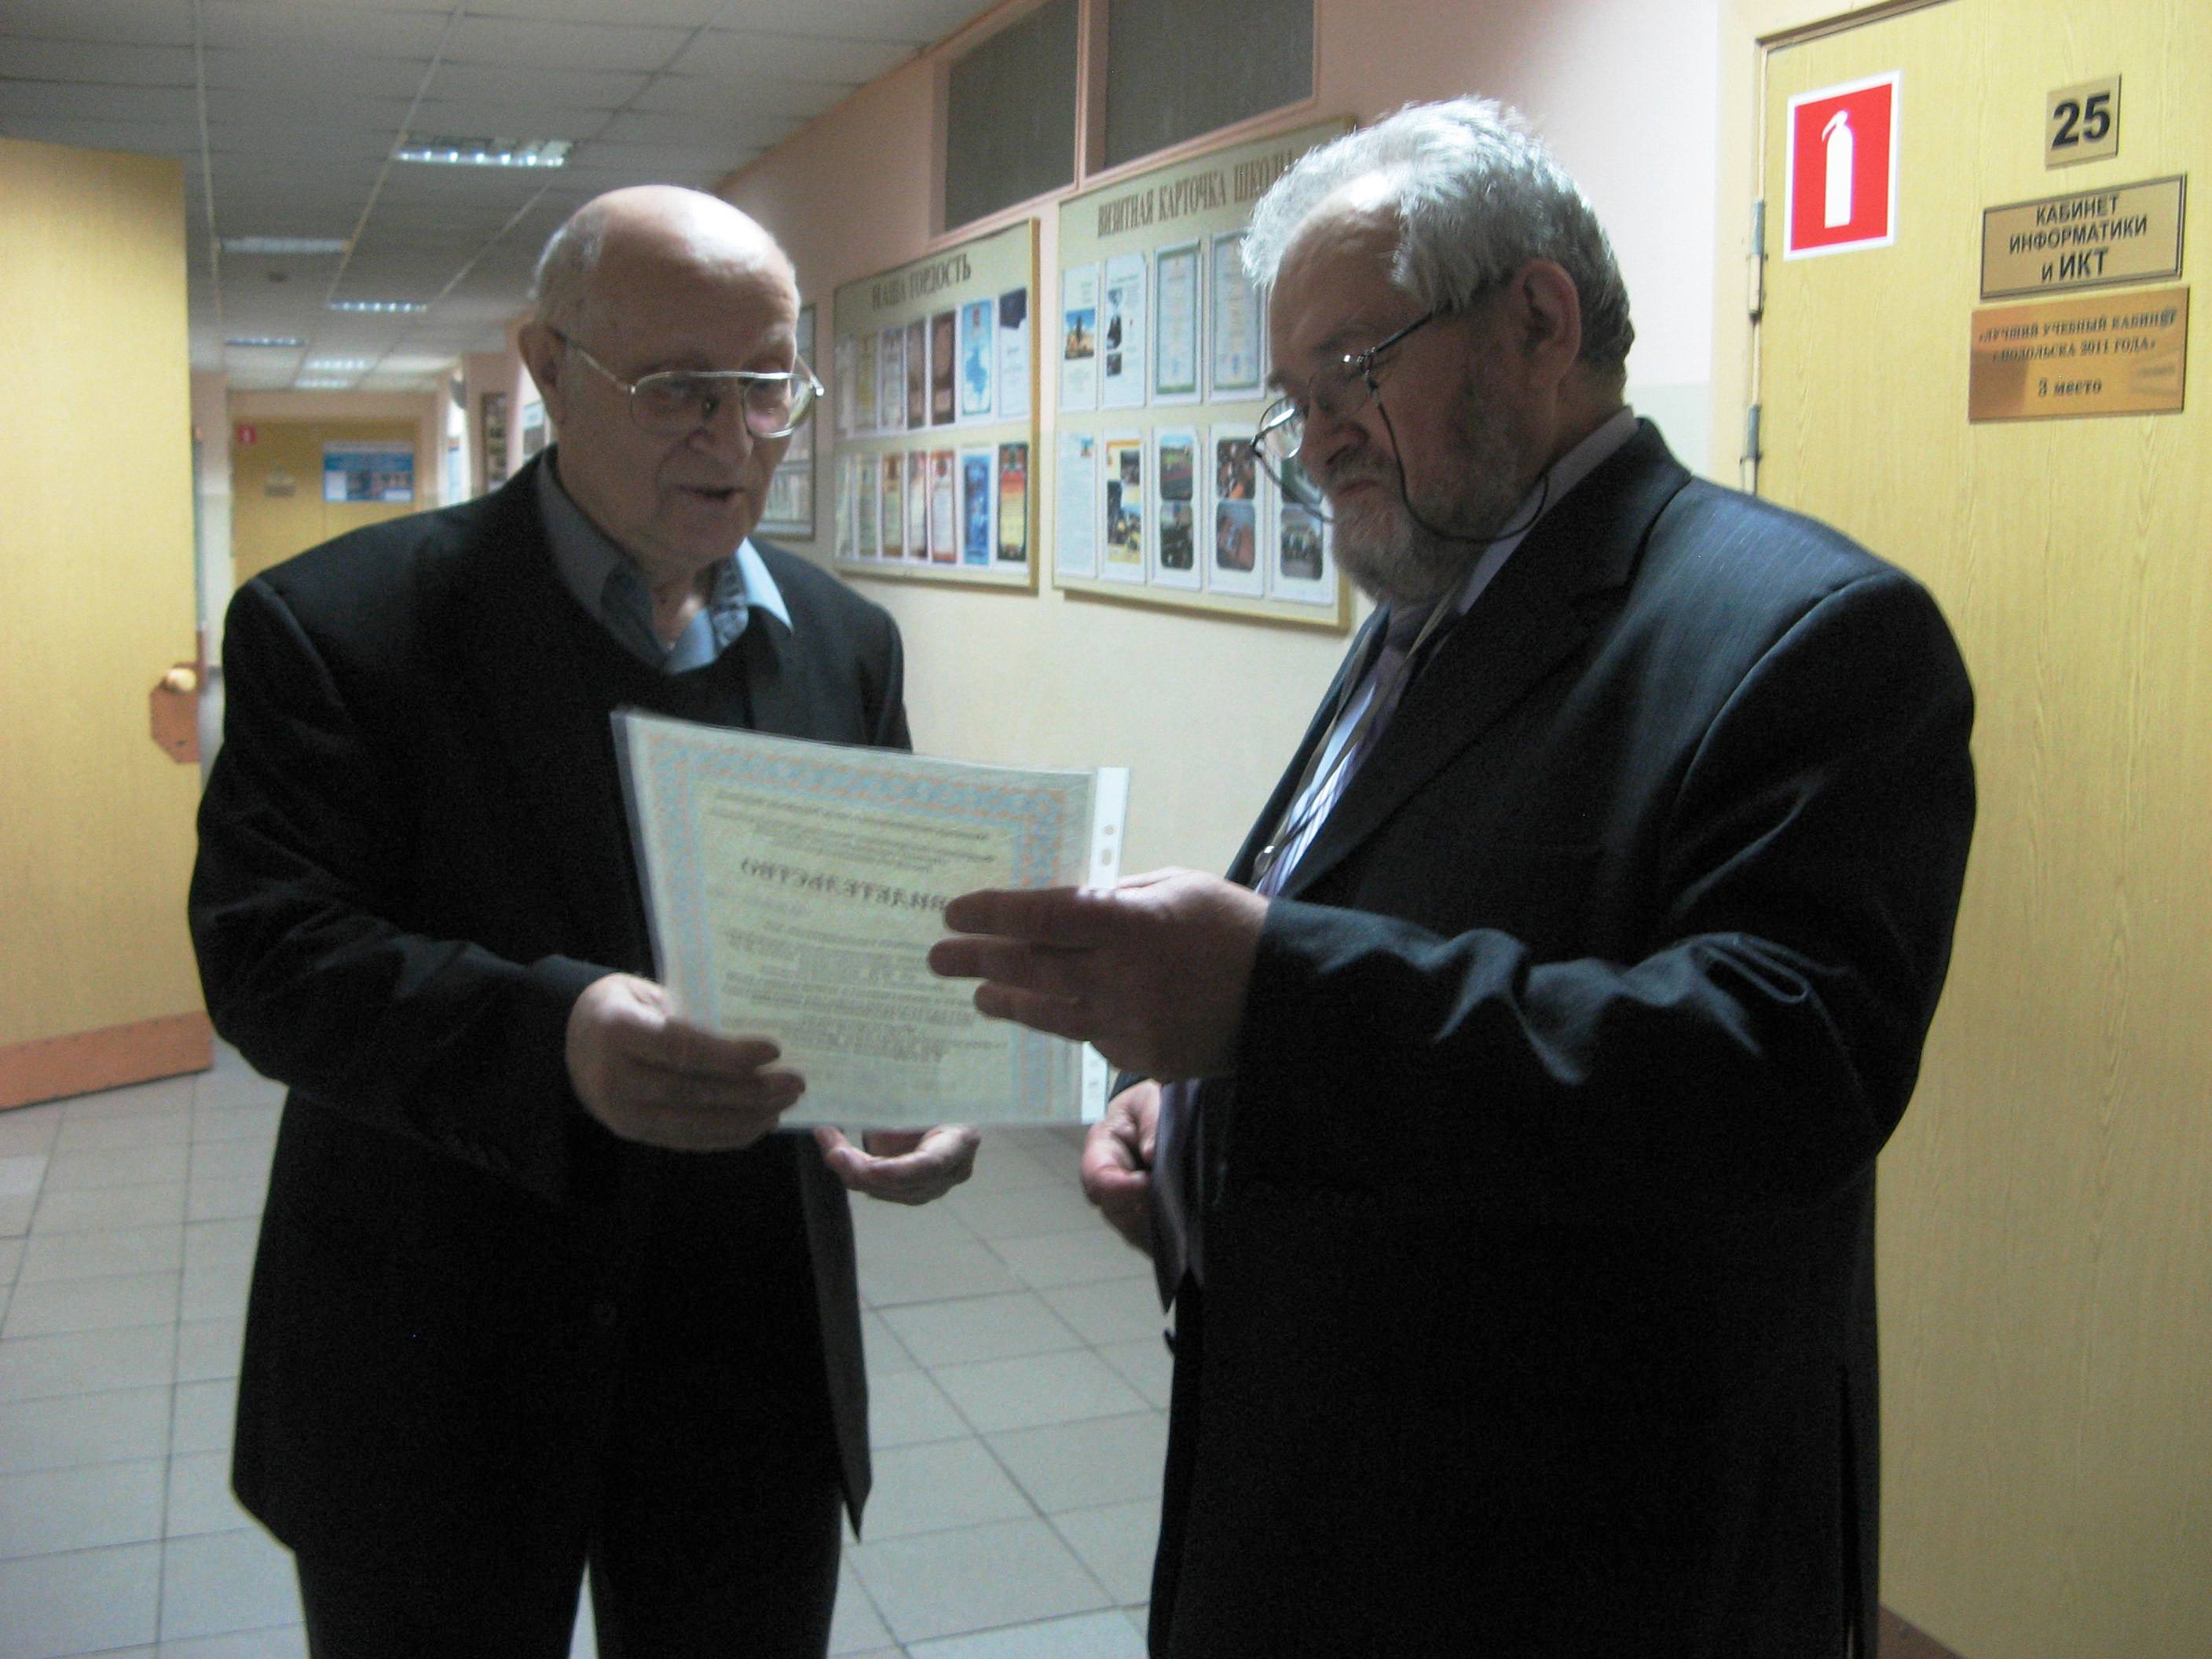 Никифоров Г.Г. вручает школе сертификат об открытии экспериментальной площадки  Института стратегии развития образования